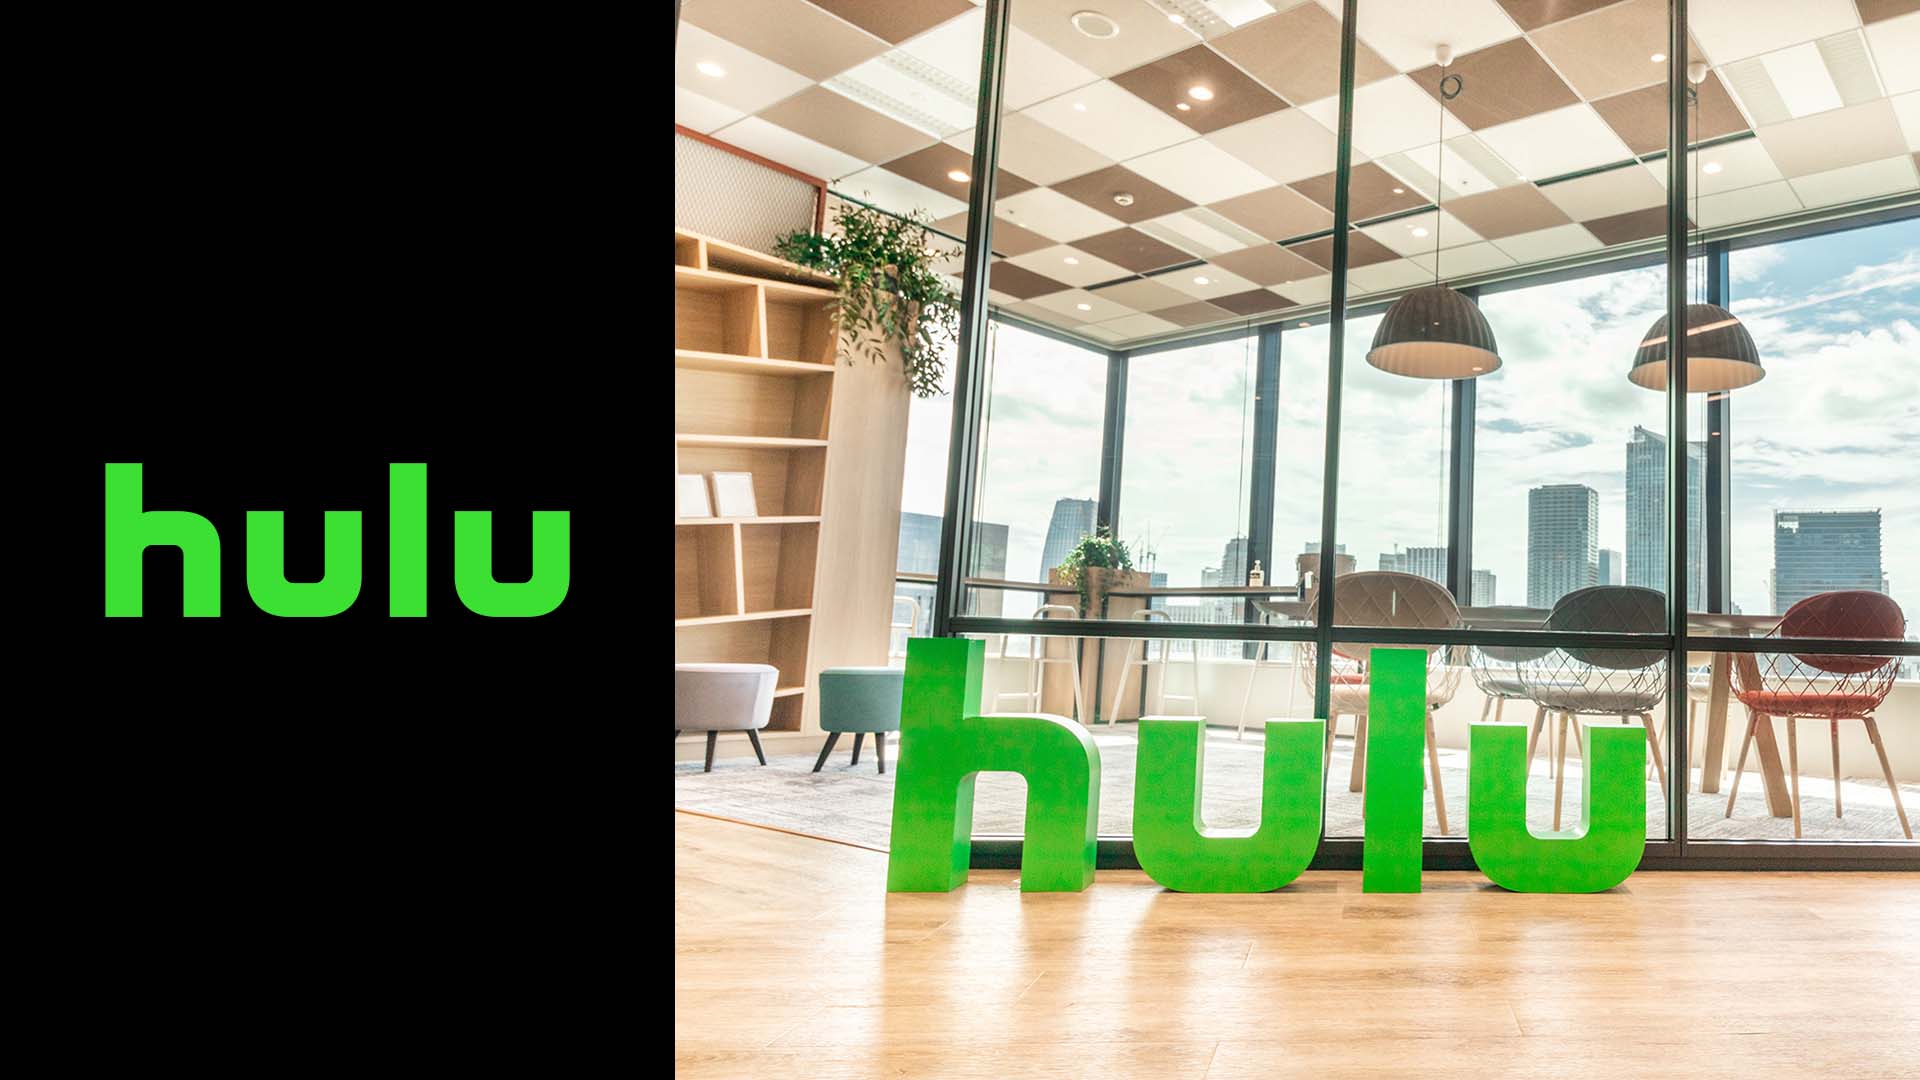 Huluの画像